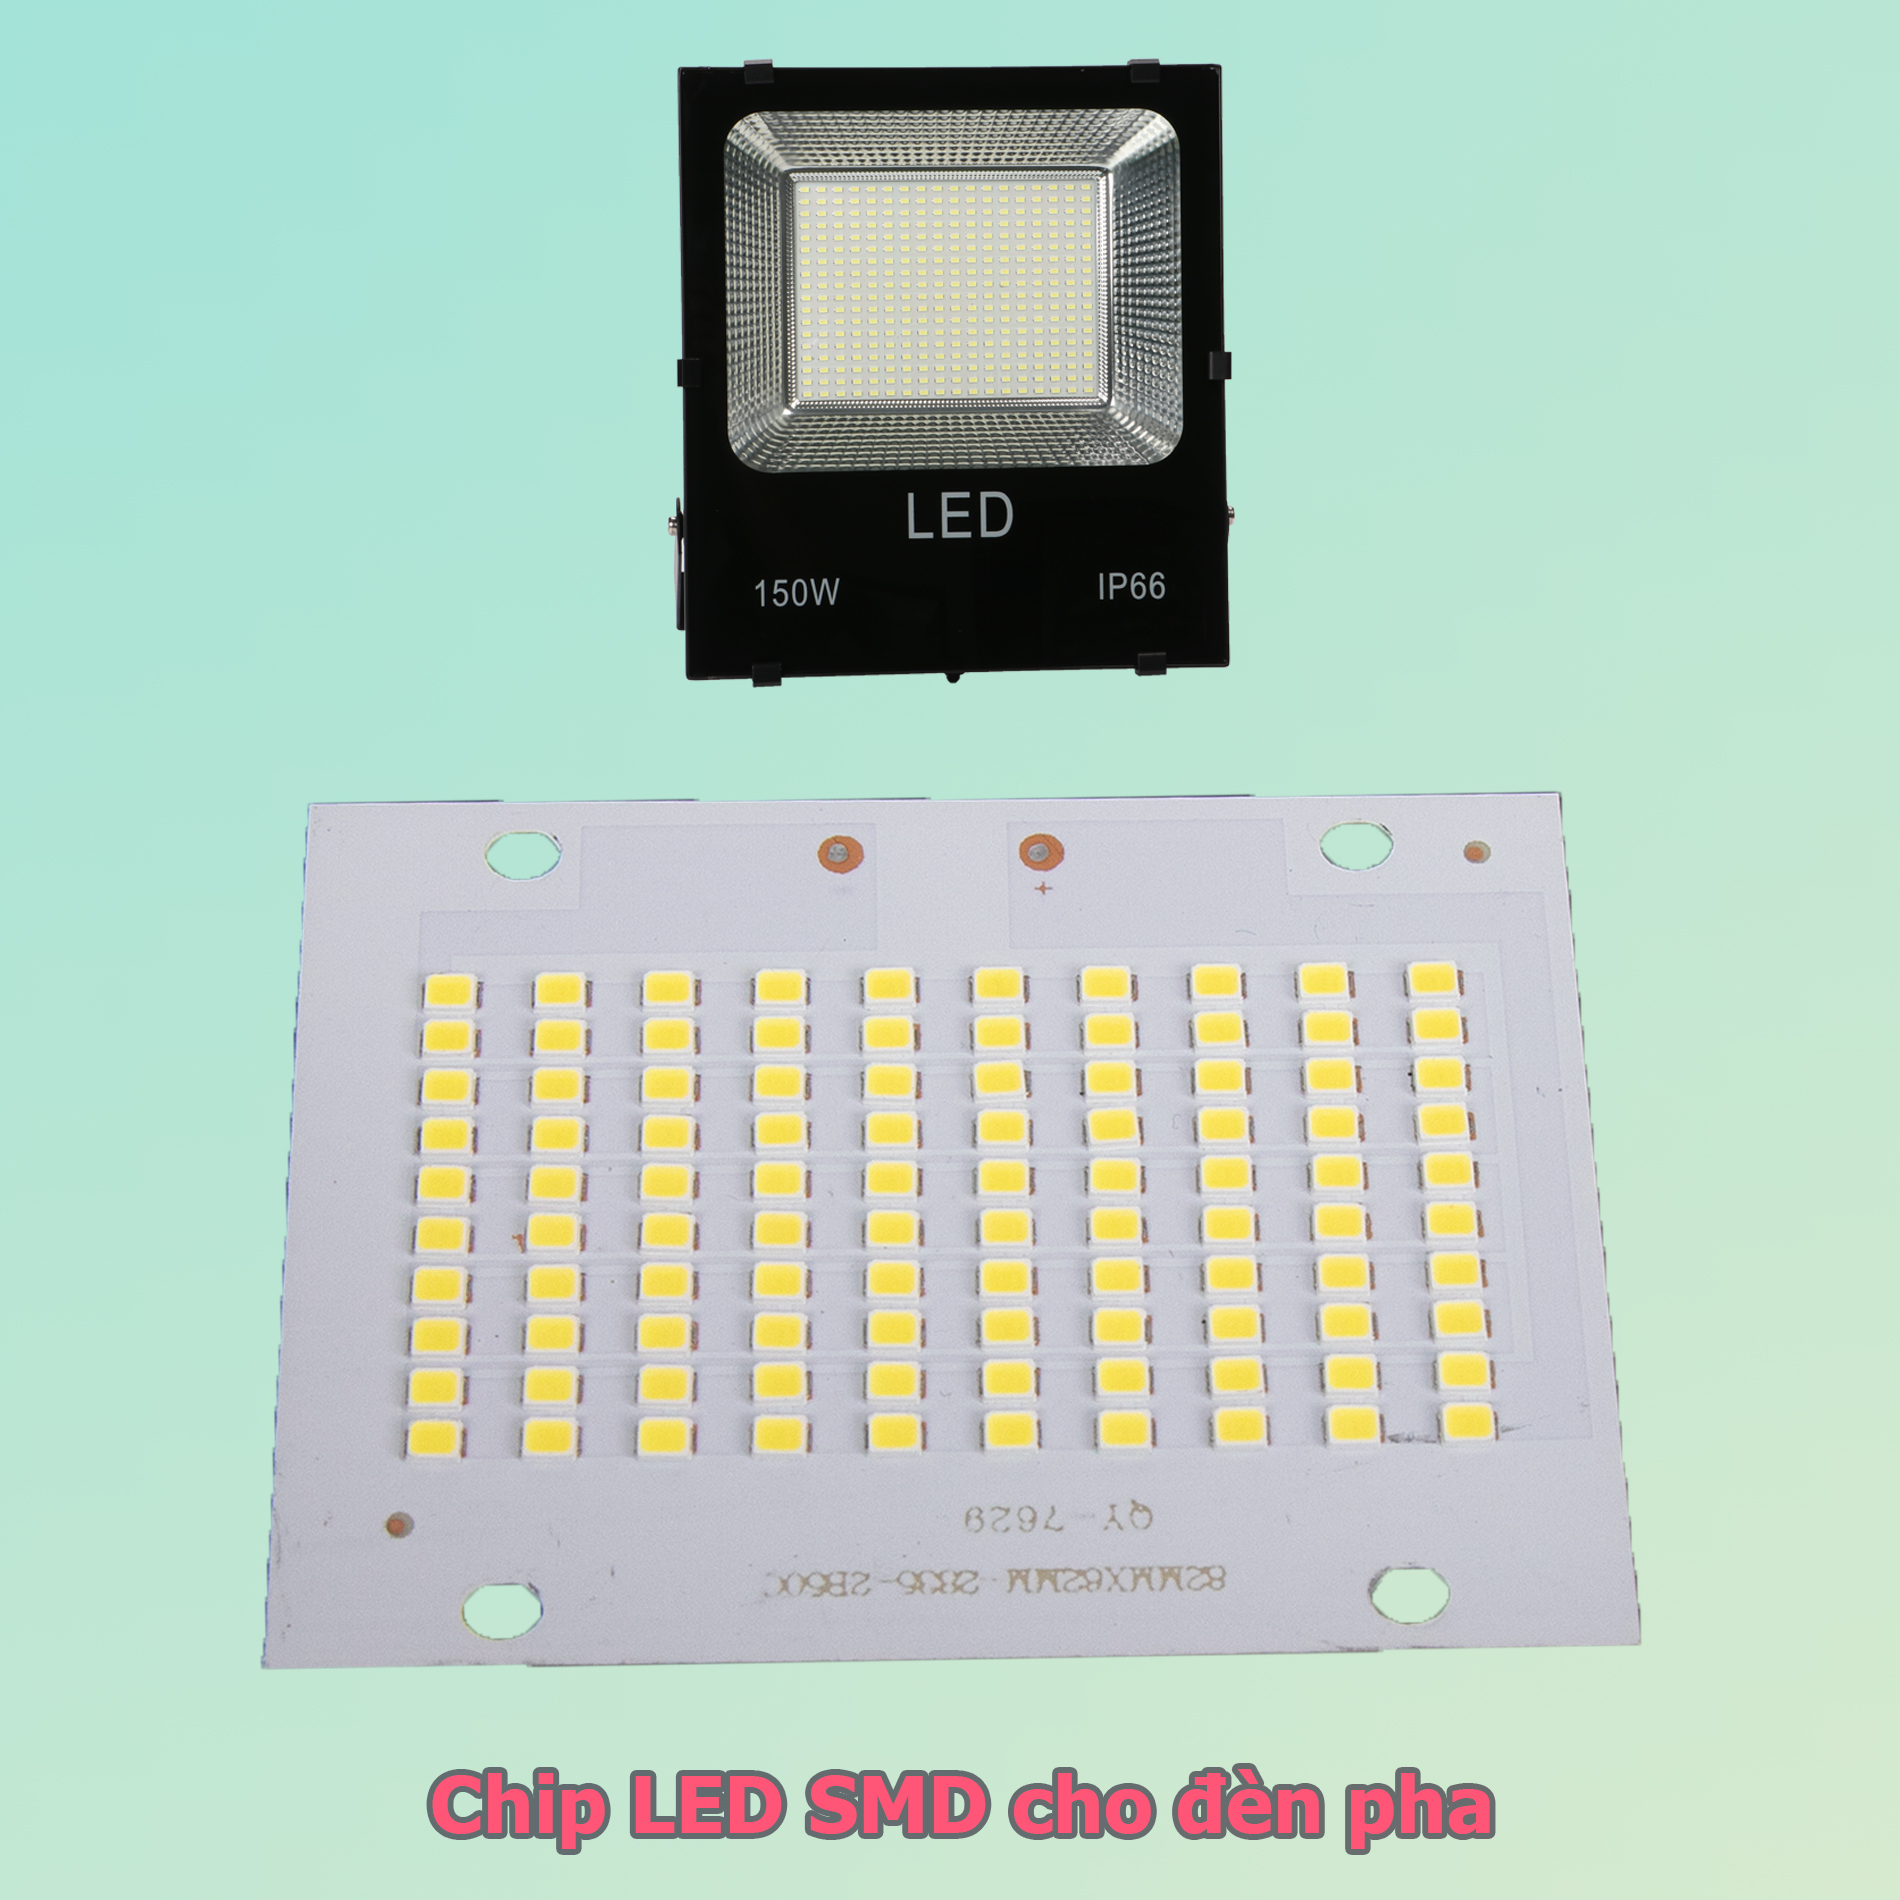 Chíp LED SMD 50w 100w cao áp cho đèn pha LED 5054 ánh sáng trắng vàng